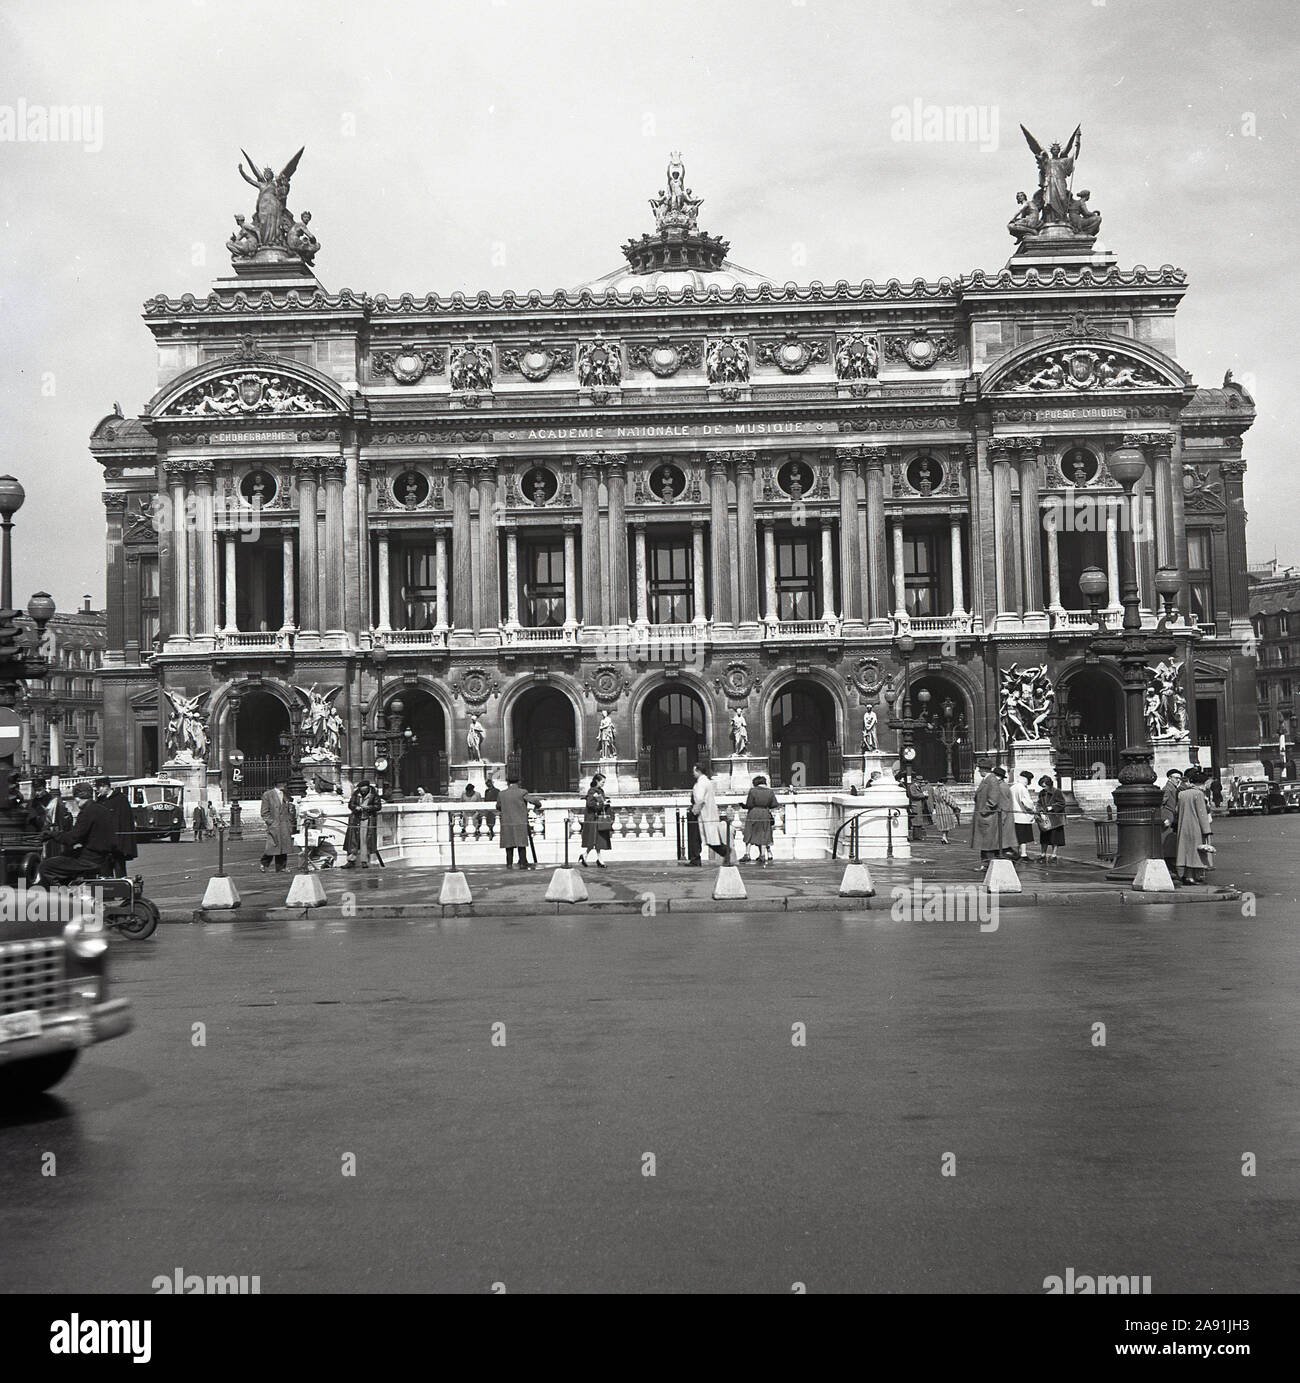 Années 1950, photo historique de J. Allan Cash montrant l'extérieur du Palais Garnier, Opéra National de Paris (Opéra) Paris, France, construit dans le style architectural de renaissance baroque de l'empereur Napoléon III Banque D'Images